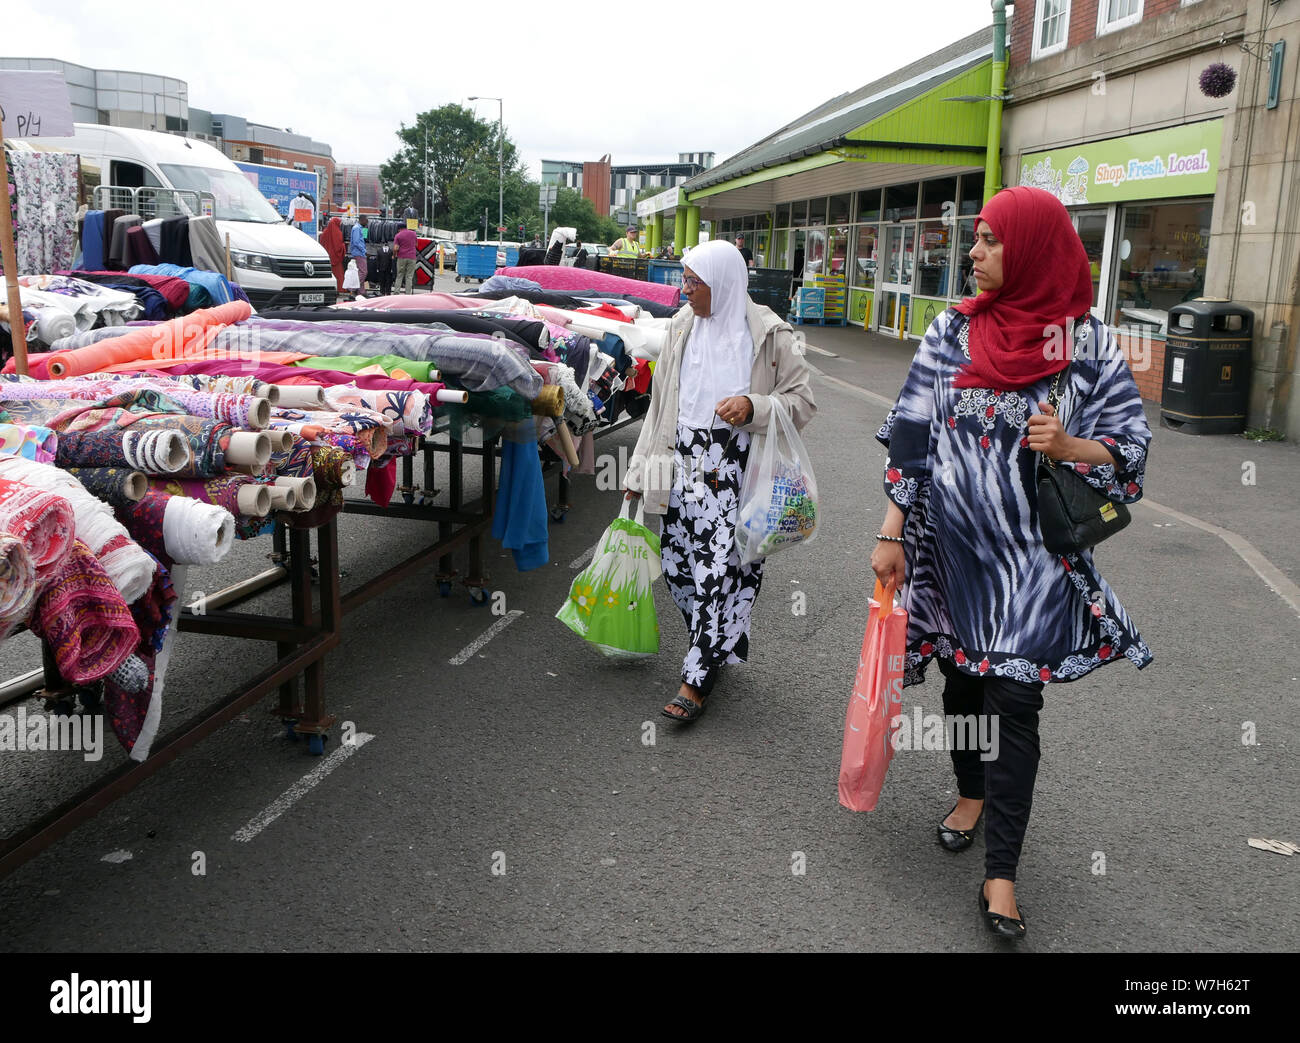 Deux femmes asiatiques consommateurs à la recherche de rouleaux de tissus et matériaux alors que des magasins Bolton marché plein air en Angleterre. photo DON TONGE Banque D'Images